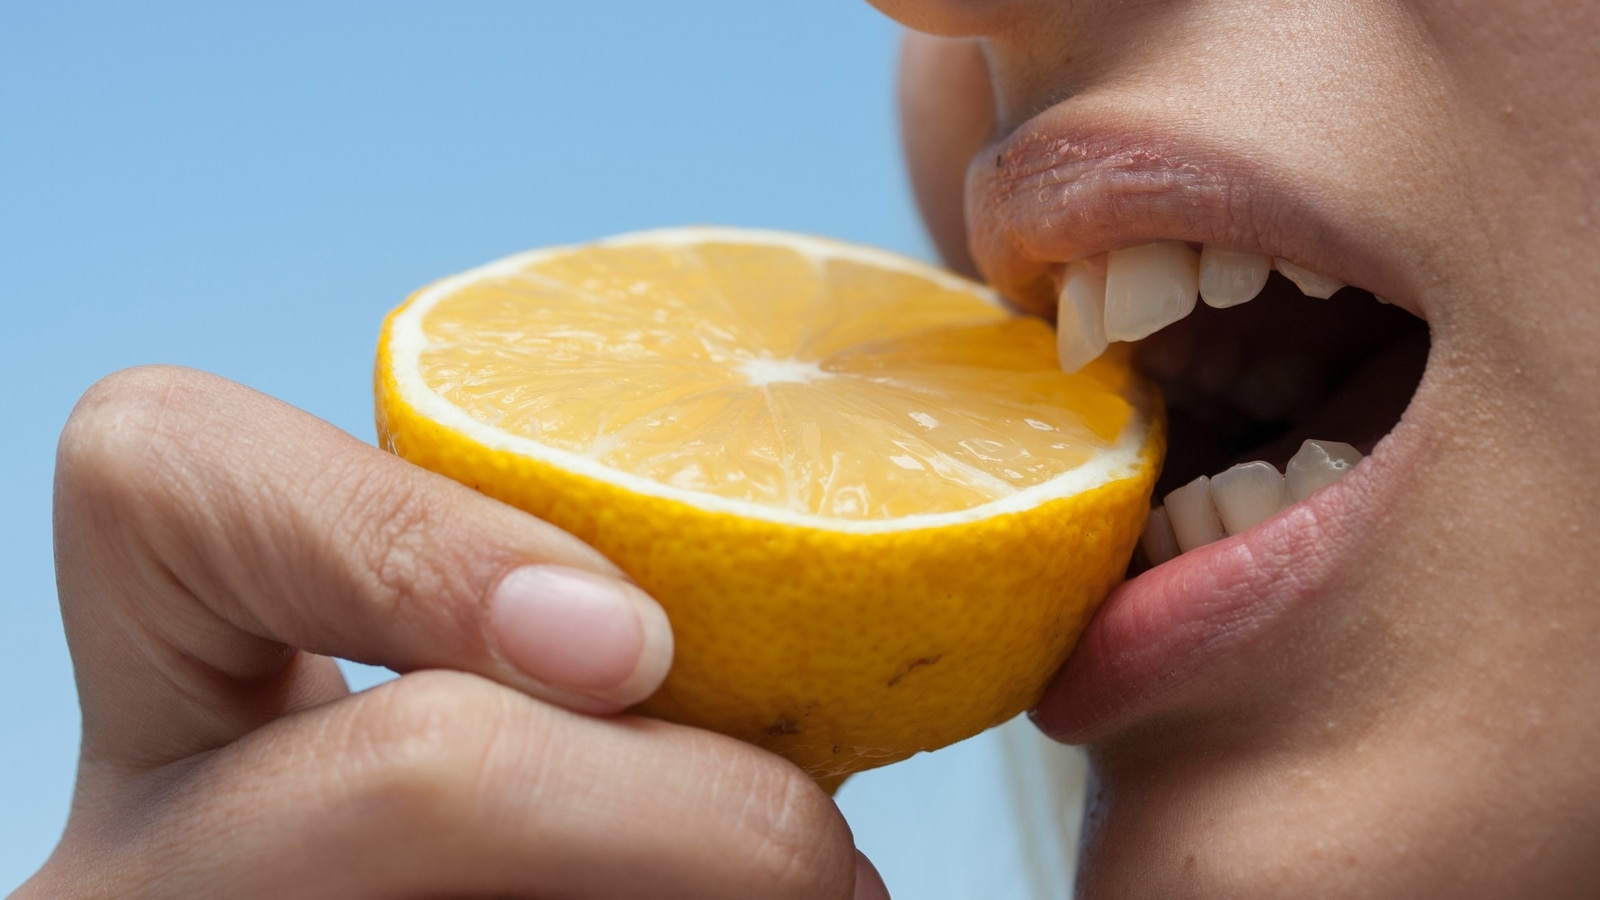 जैविक अंतर: कैसे प्राकृतिक तत्व मौखिक स्वास्थ्य, दंत स्वच्छता को बढ़ाते हैं